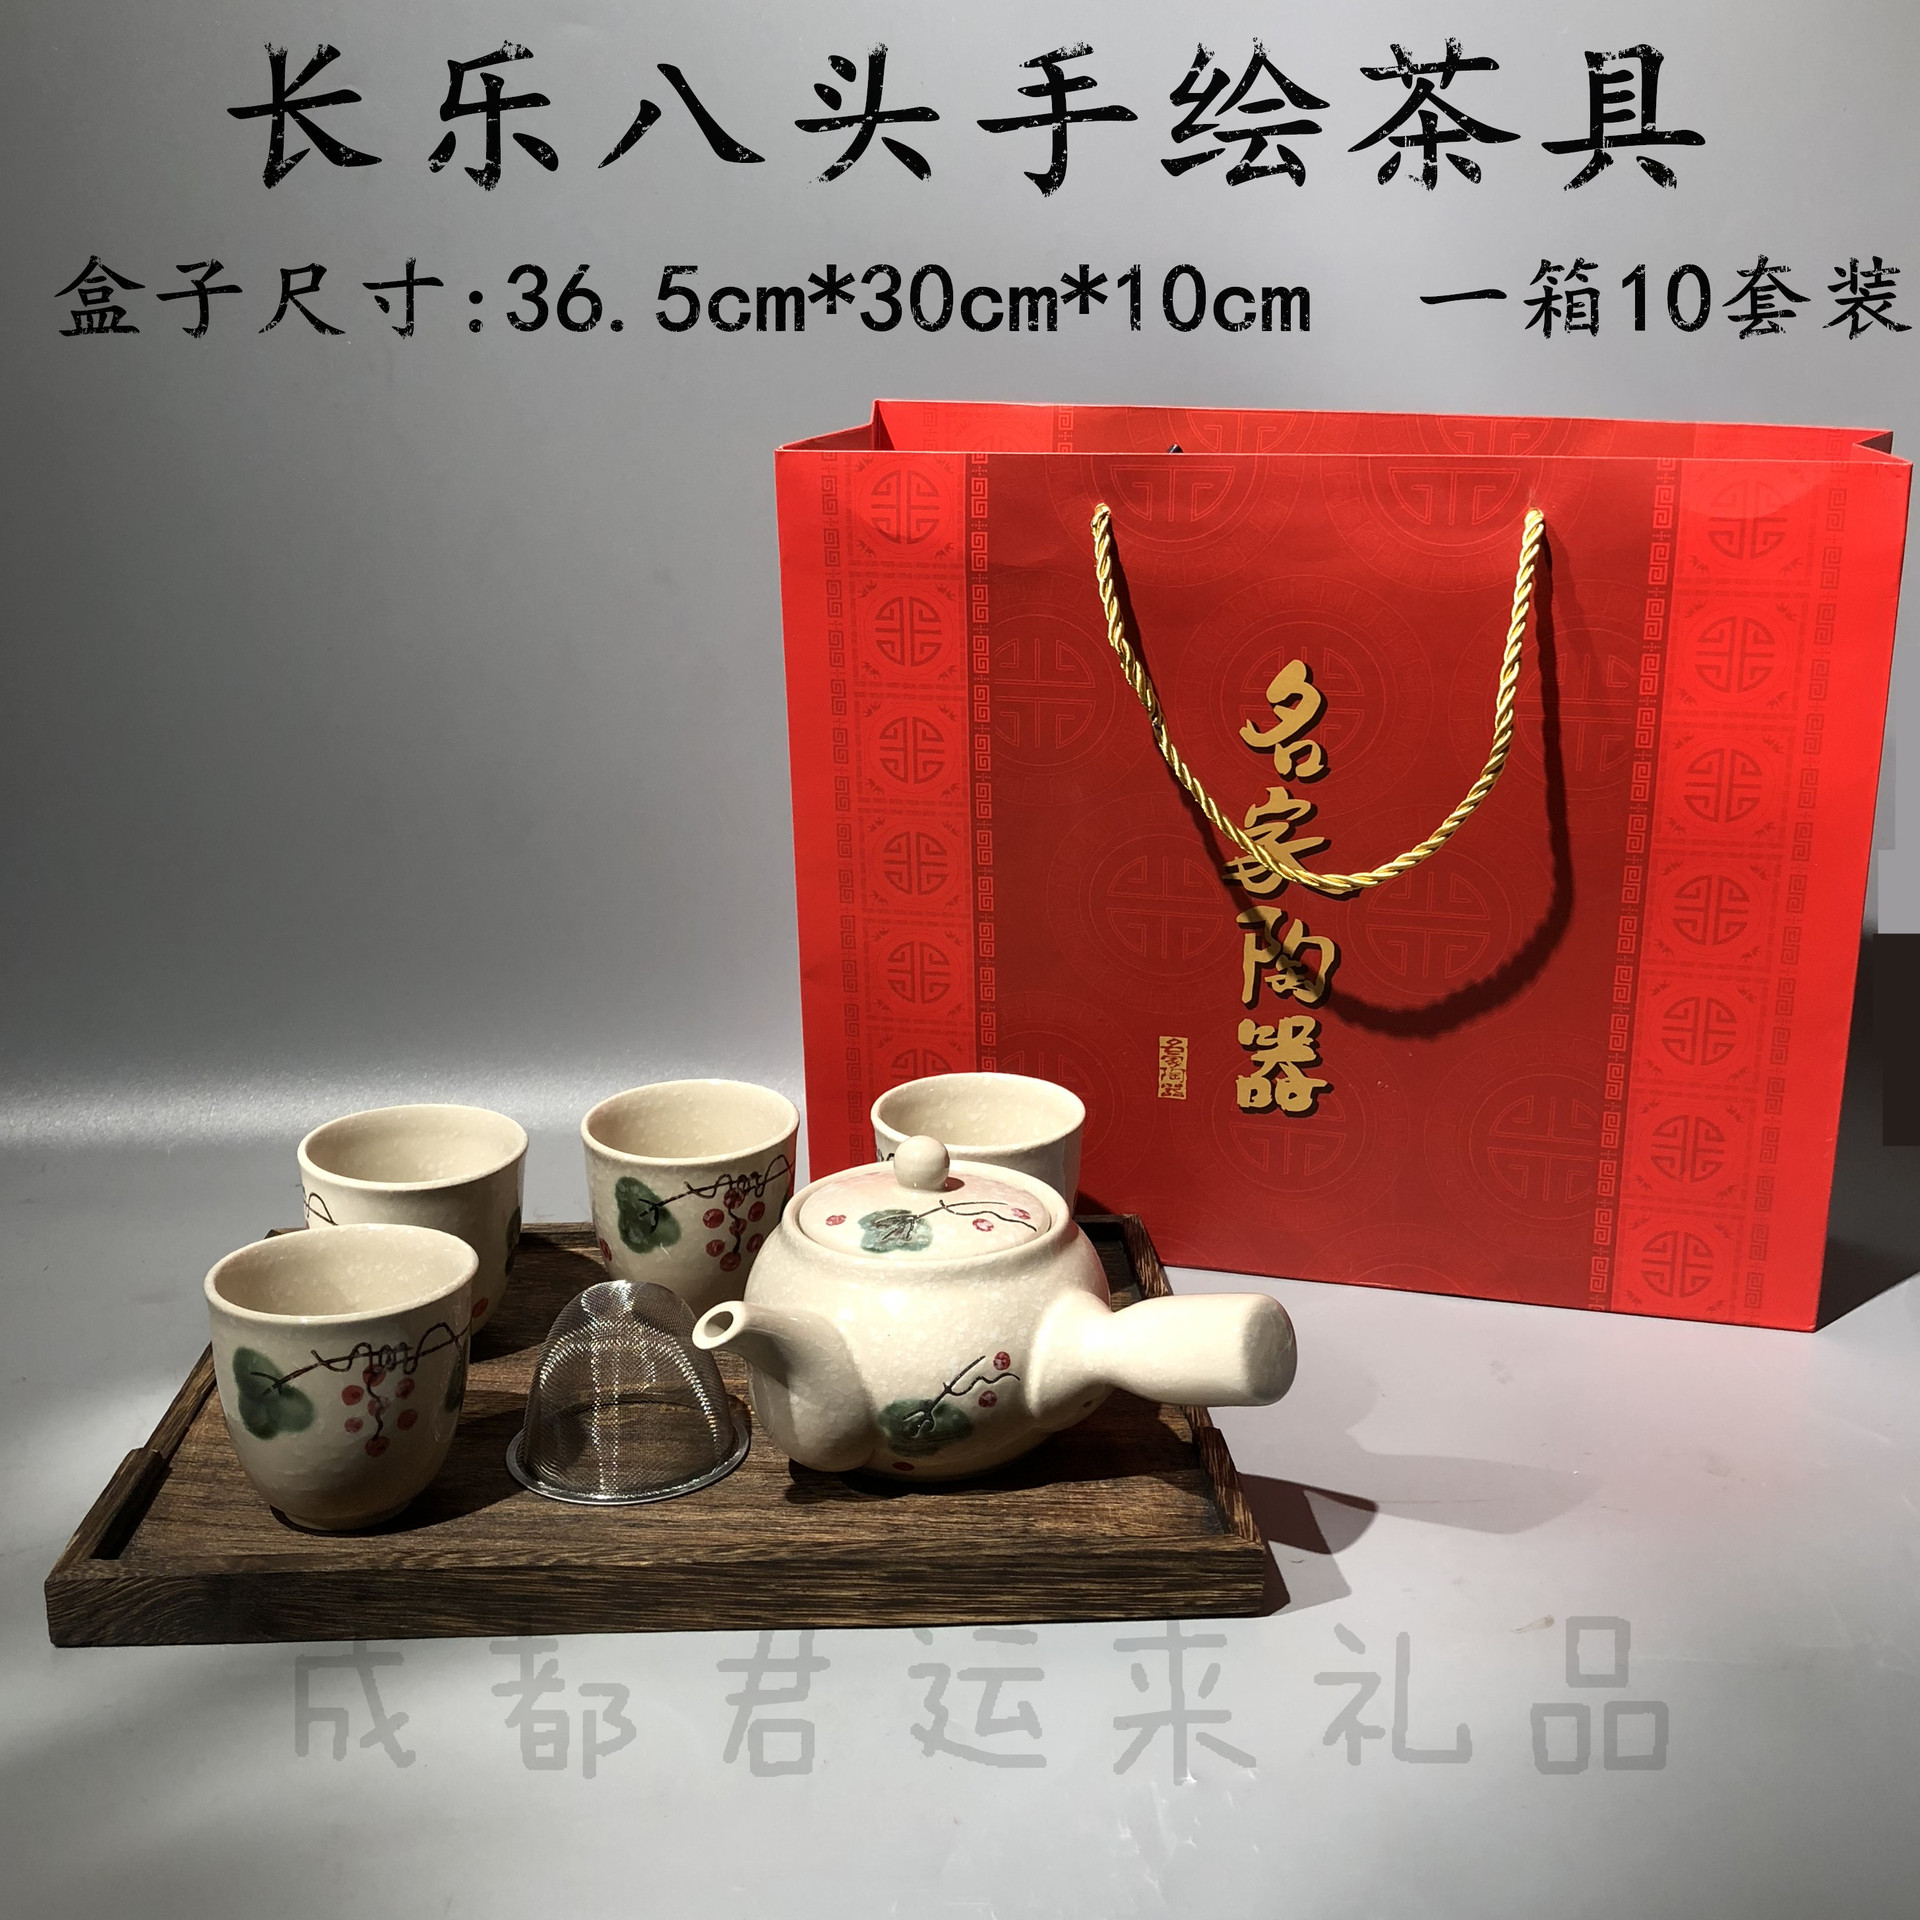 长乐八头茶具 整套茶具 带盘陶瓷茶具礼盒礼品礼盒茶具